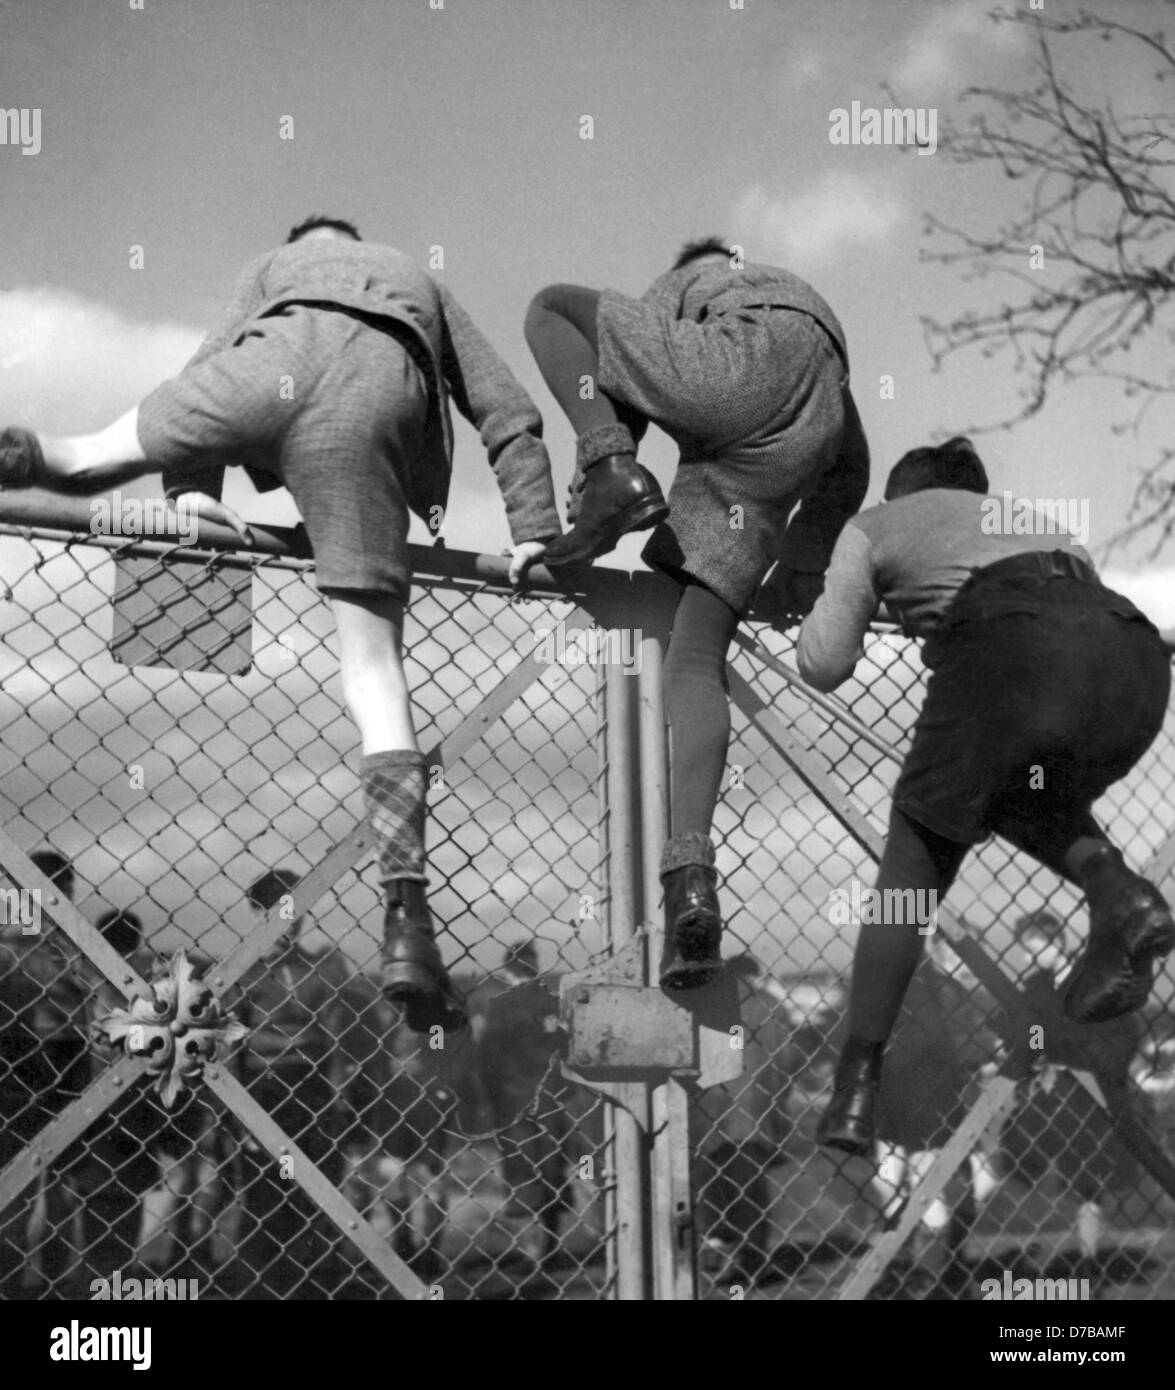 Drei Jungs klettern über ein geschlossenes Tor im Februar 1953, Zugang zu einem Fußballplatz, wo ein Fußballspiel stattfinden wird. Vielleicht haben die Jungs nicht die notwendigen Eintritt. +++(c) Dpa - Bericht +++ Stockfoto